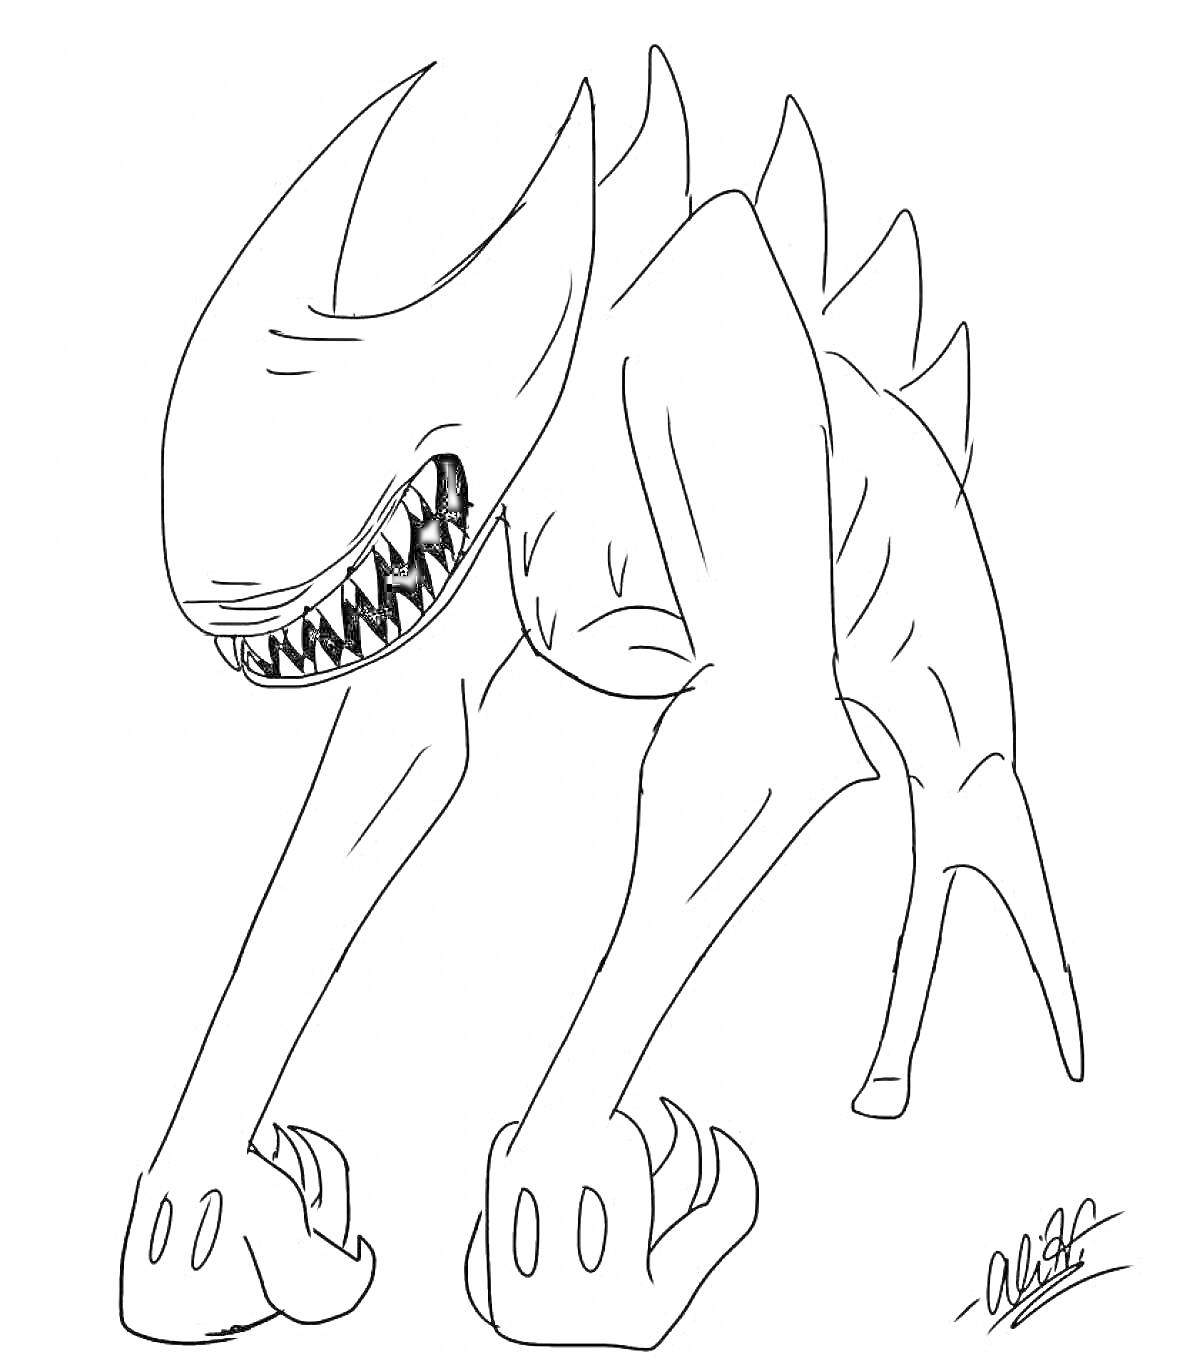 Раскраска Монстр с острыми зубами и шипами на спине из вселенной Бенди